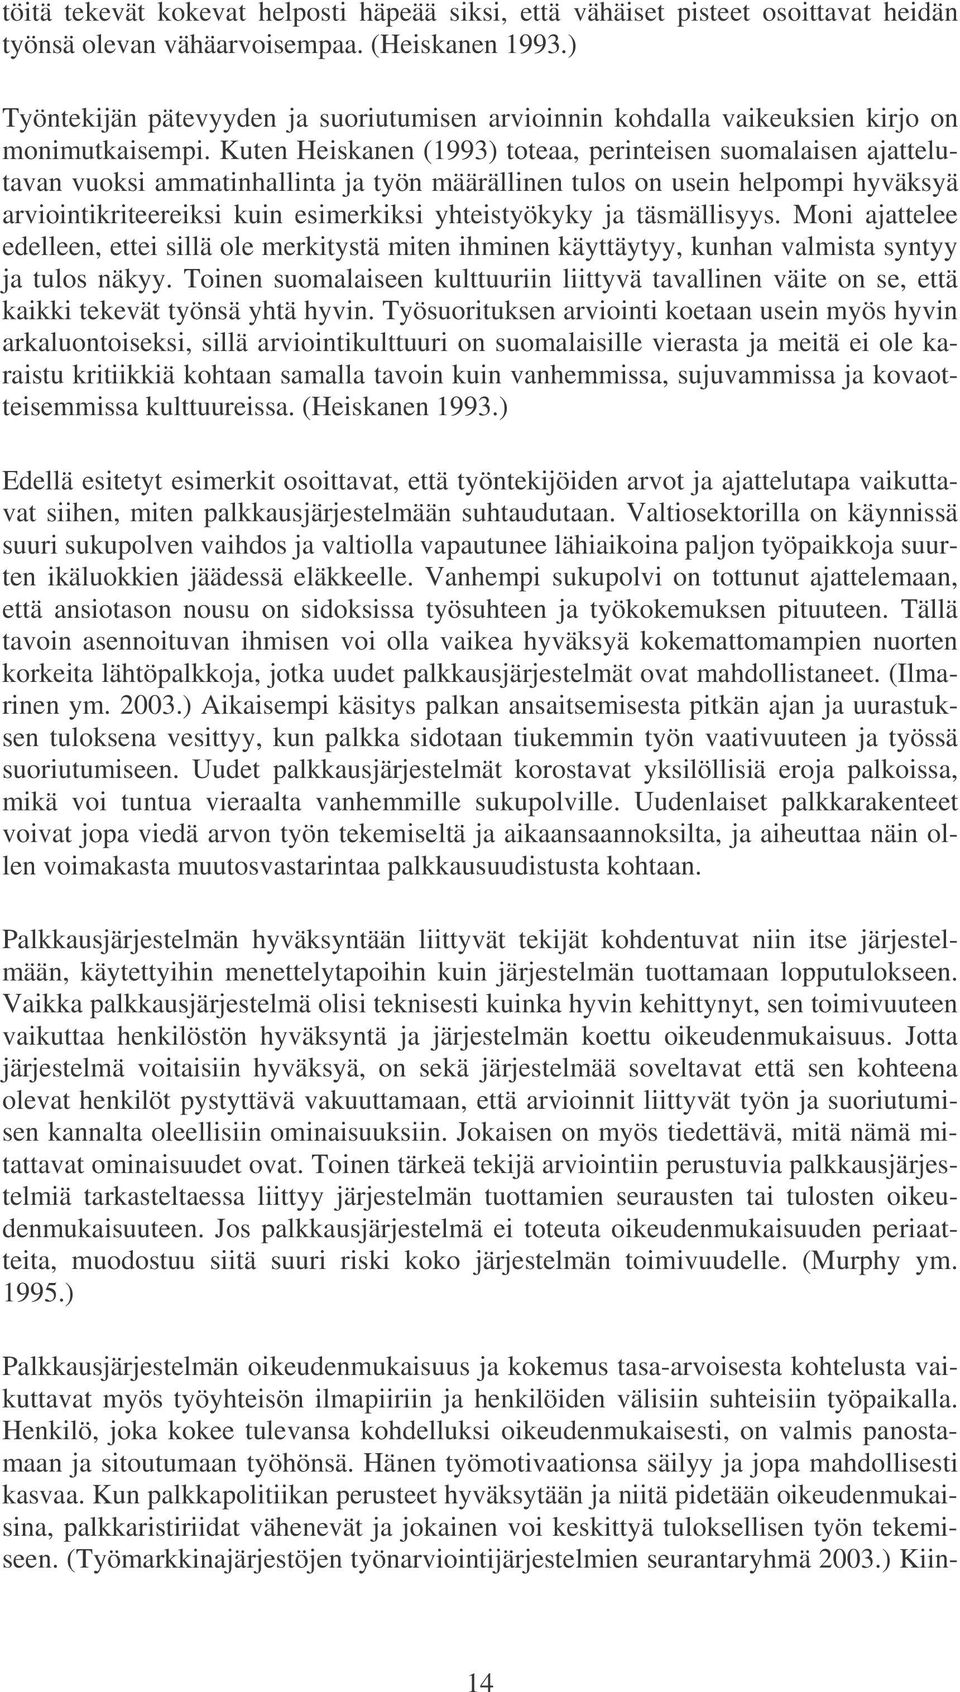 Kuten Heiskanen (1993) toteaa, perinteisen suomalaisen ajattelutavan vuoksi ammatinhallinta ja työn määrällinen tulos on usein helpompi hyväksyä arviointikriteereiksi kuin esimerkiksi yhteistyökyky